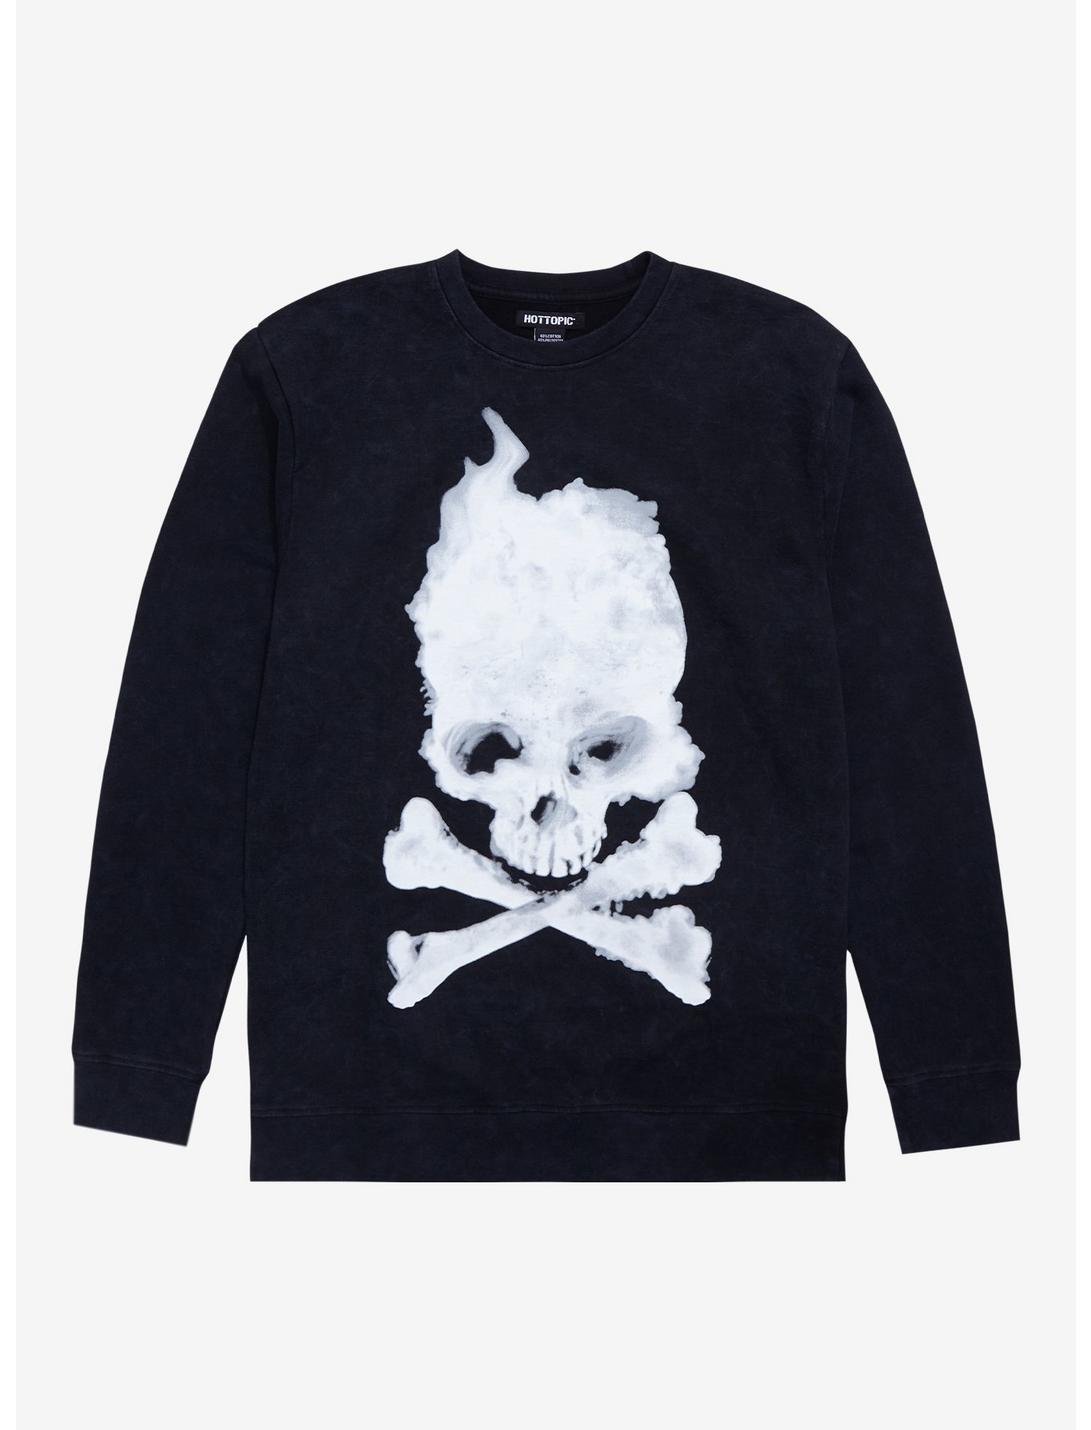 Blurry Skull & Crossbones Crewneck Sweater, BLACK, hi-res